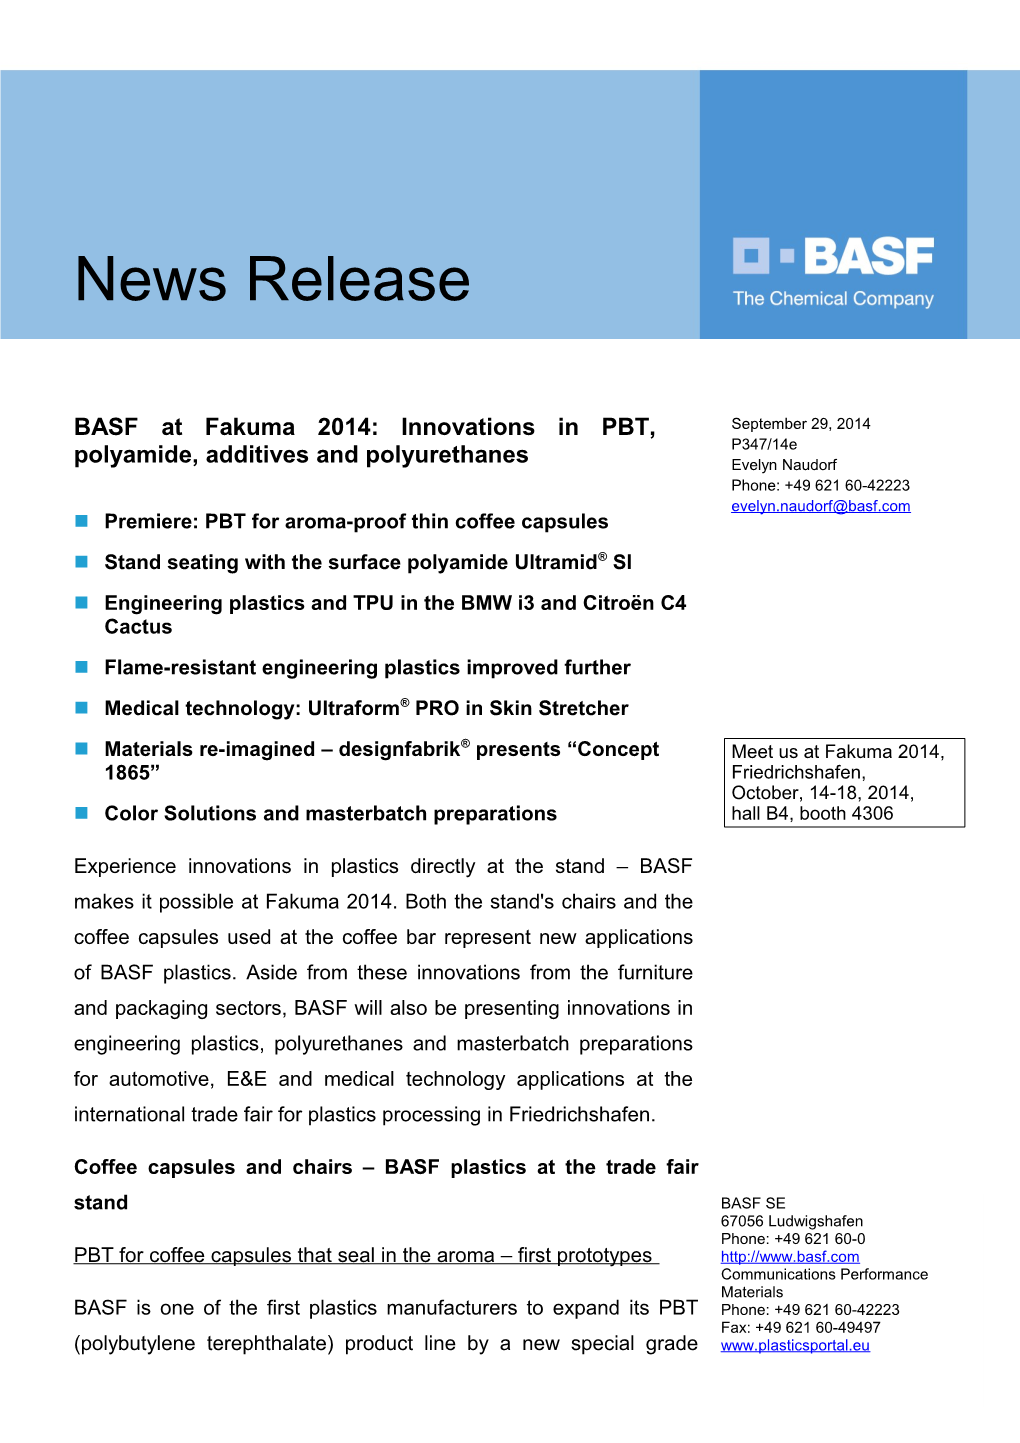 BASF at Fakuma 2014: Innovations in PBT, Polyamide, Additives and Polyurethanes